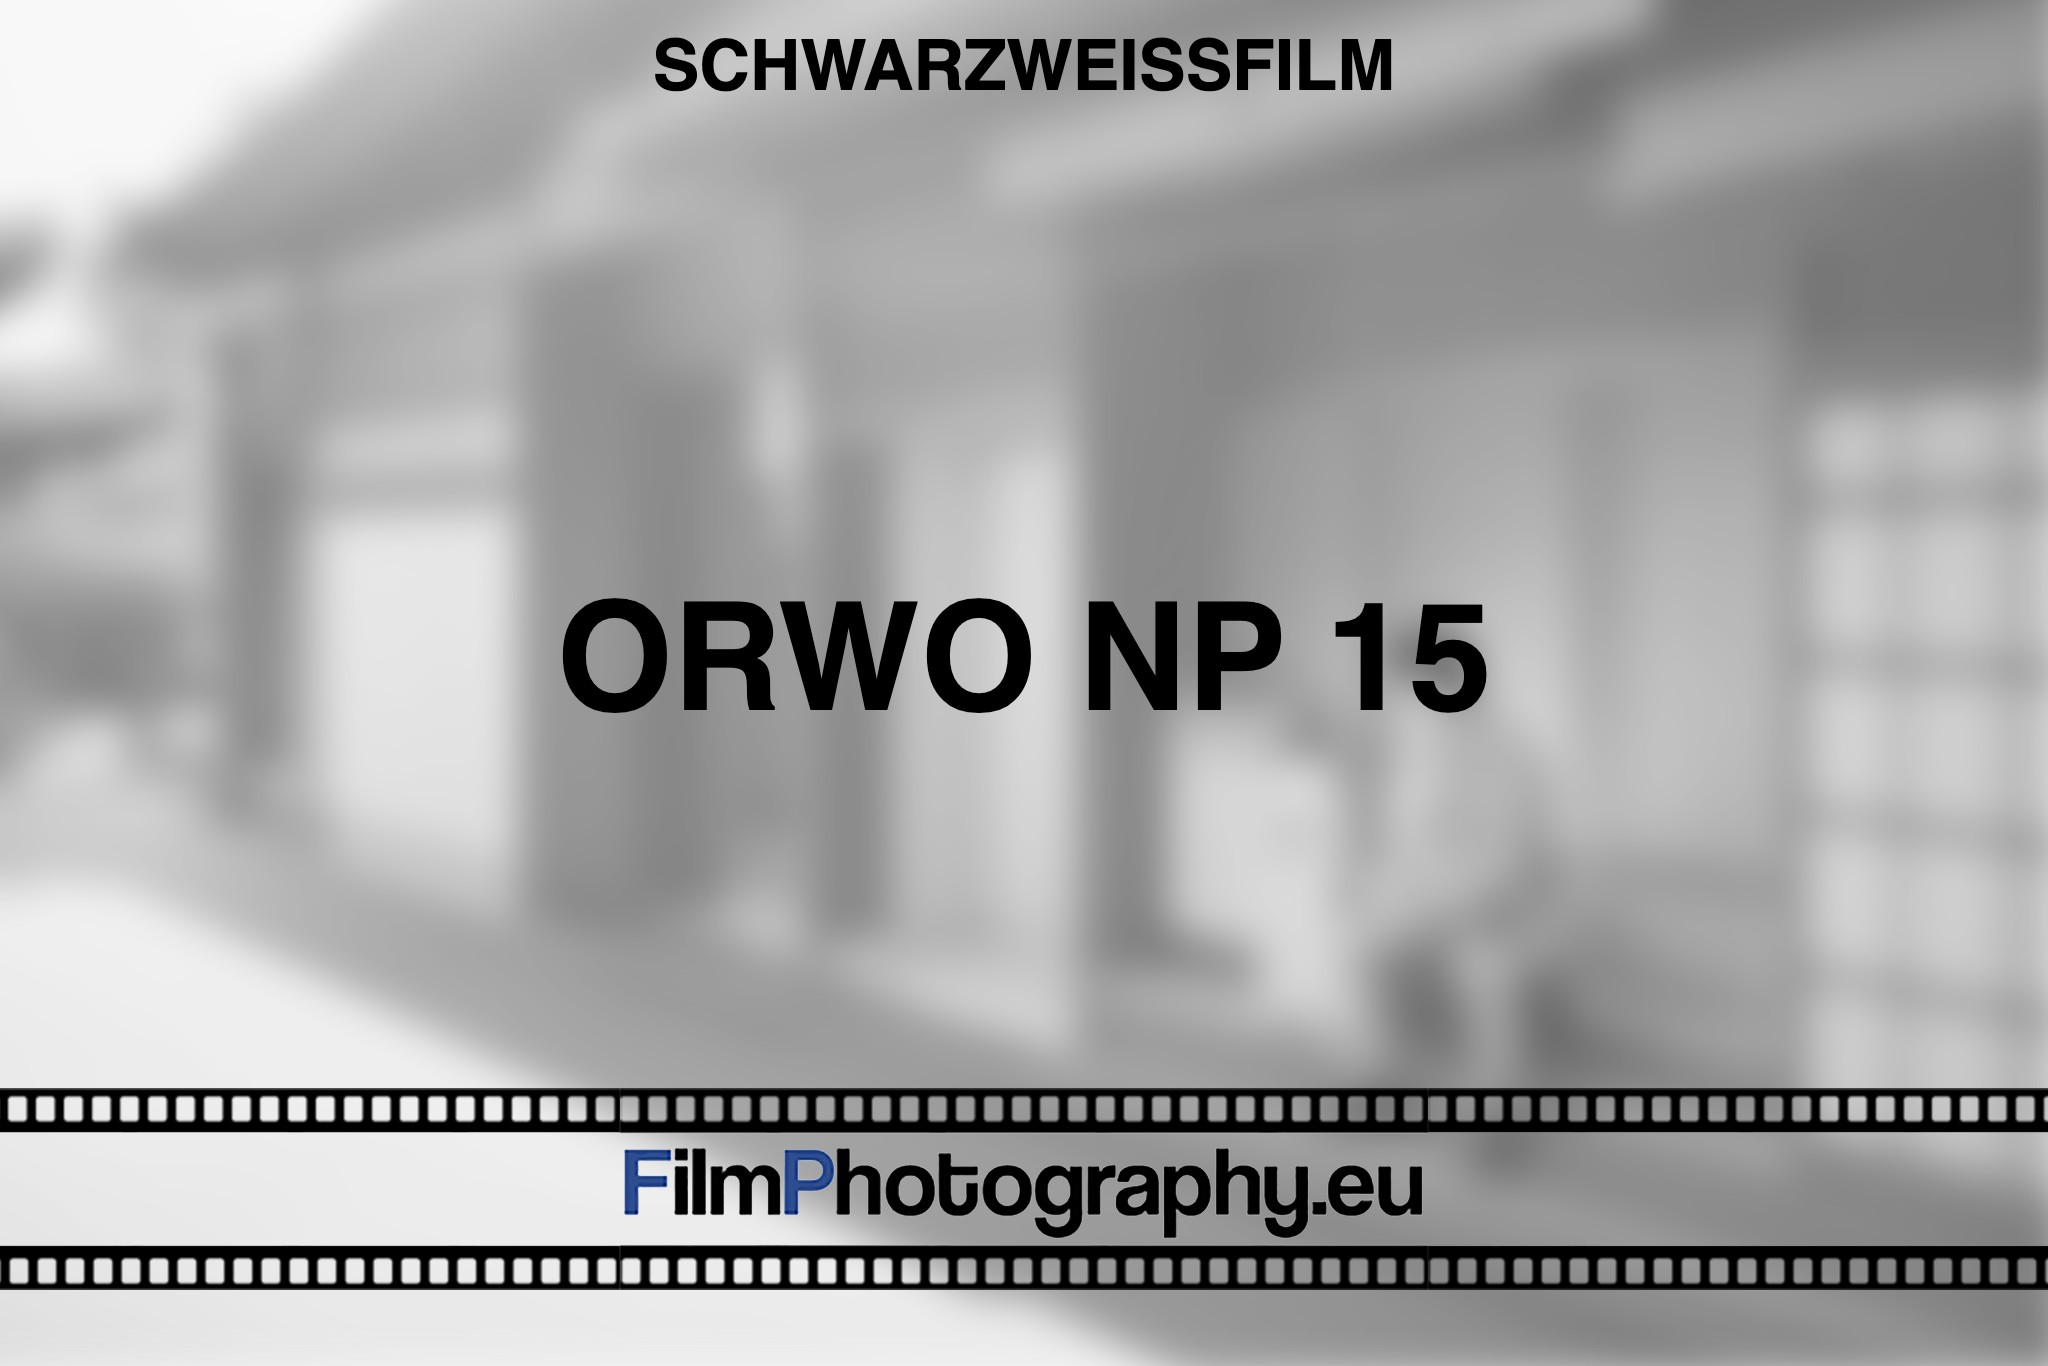 orwo-np-15-schwarzweißfilm-bnv